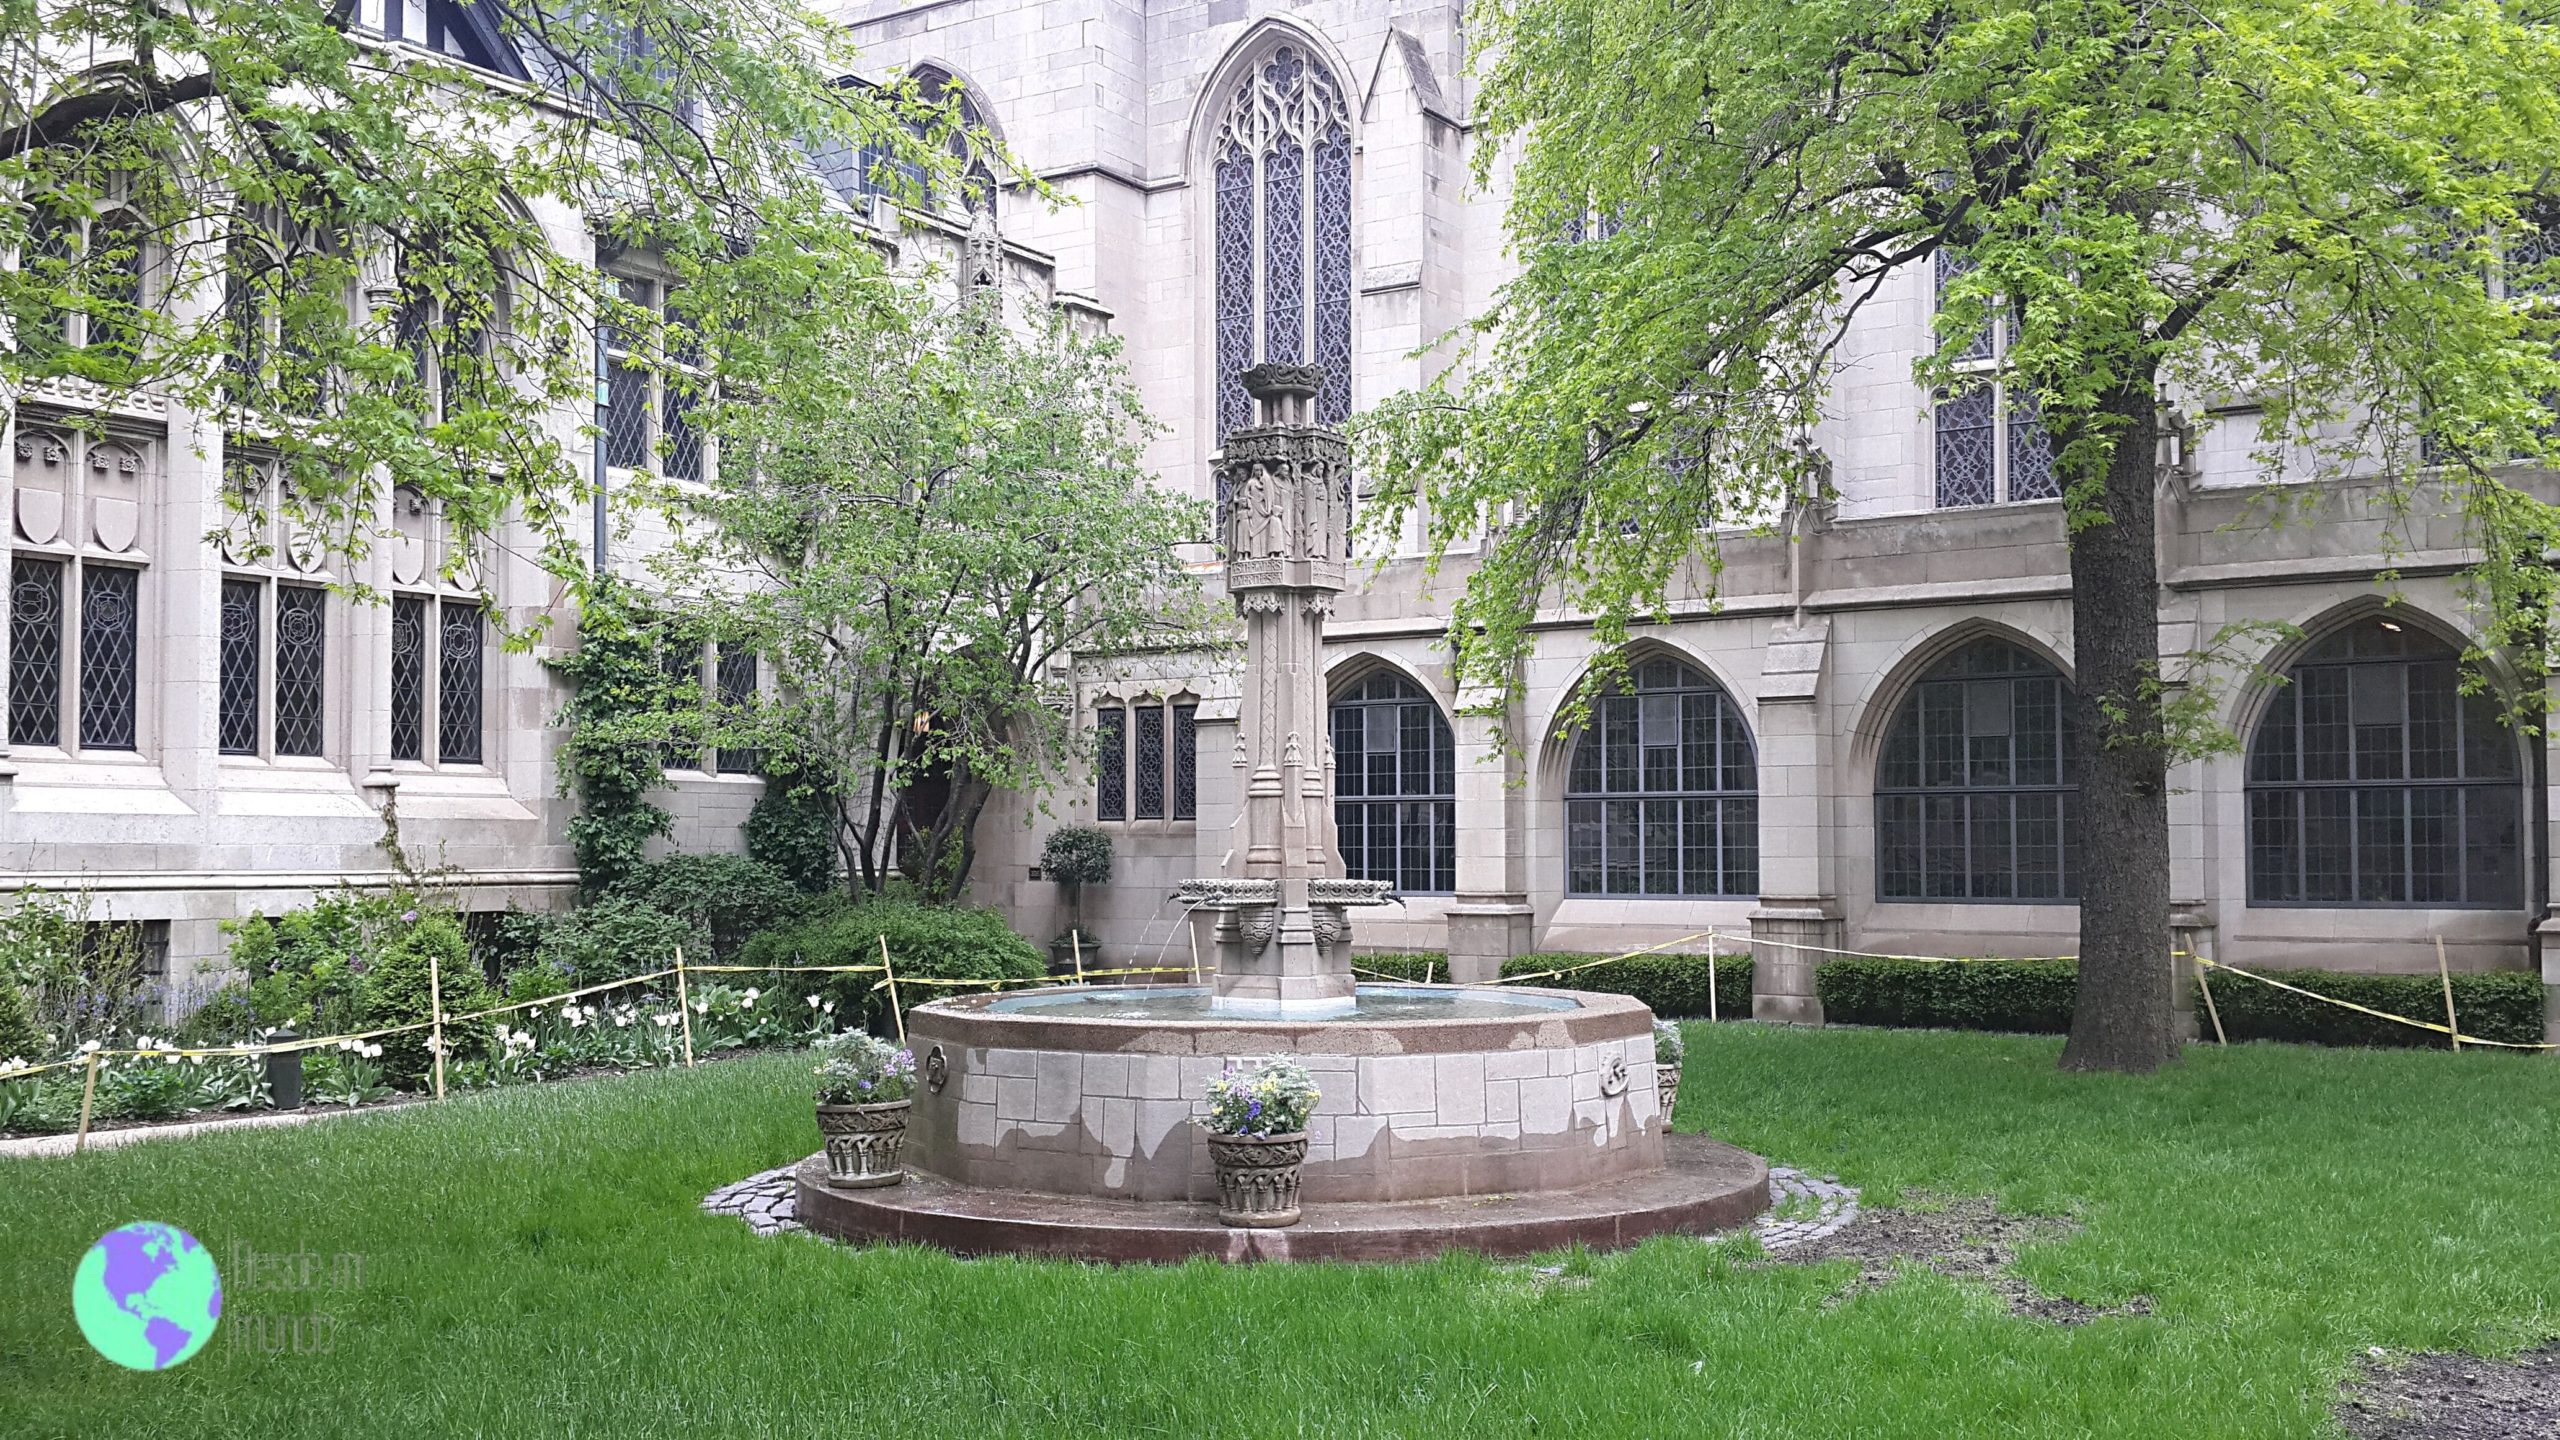 Fourth Presbyterian Church - Chicago, USA - Que ver en Chicago en 2 días -  Desde mi mundo blog de viajes